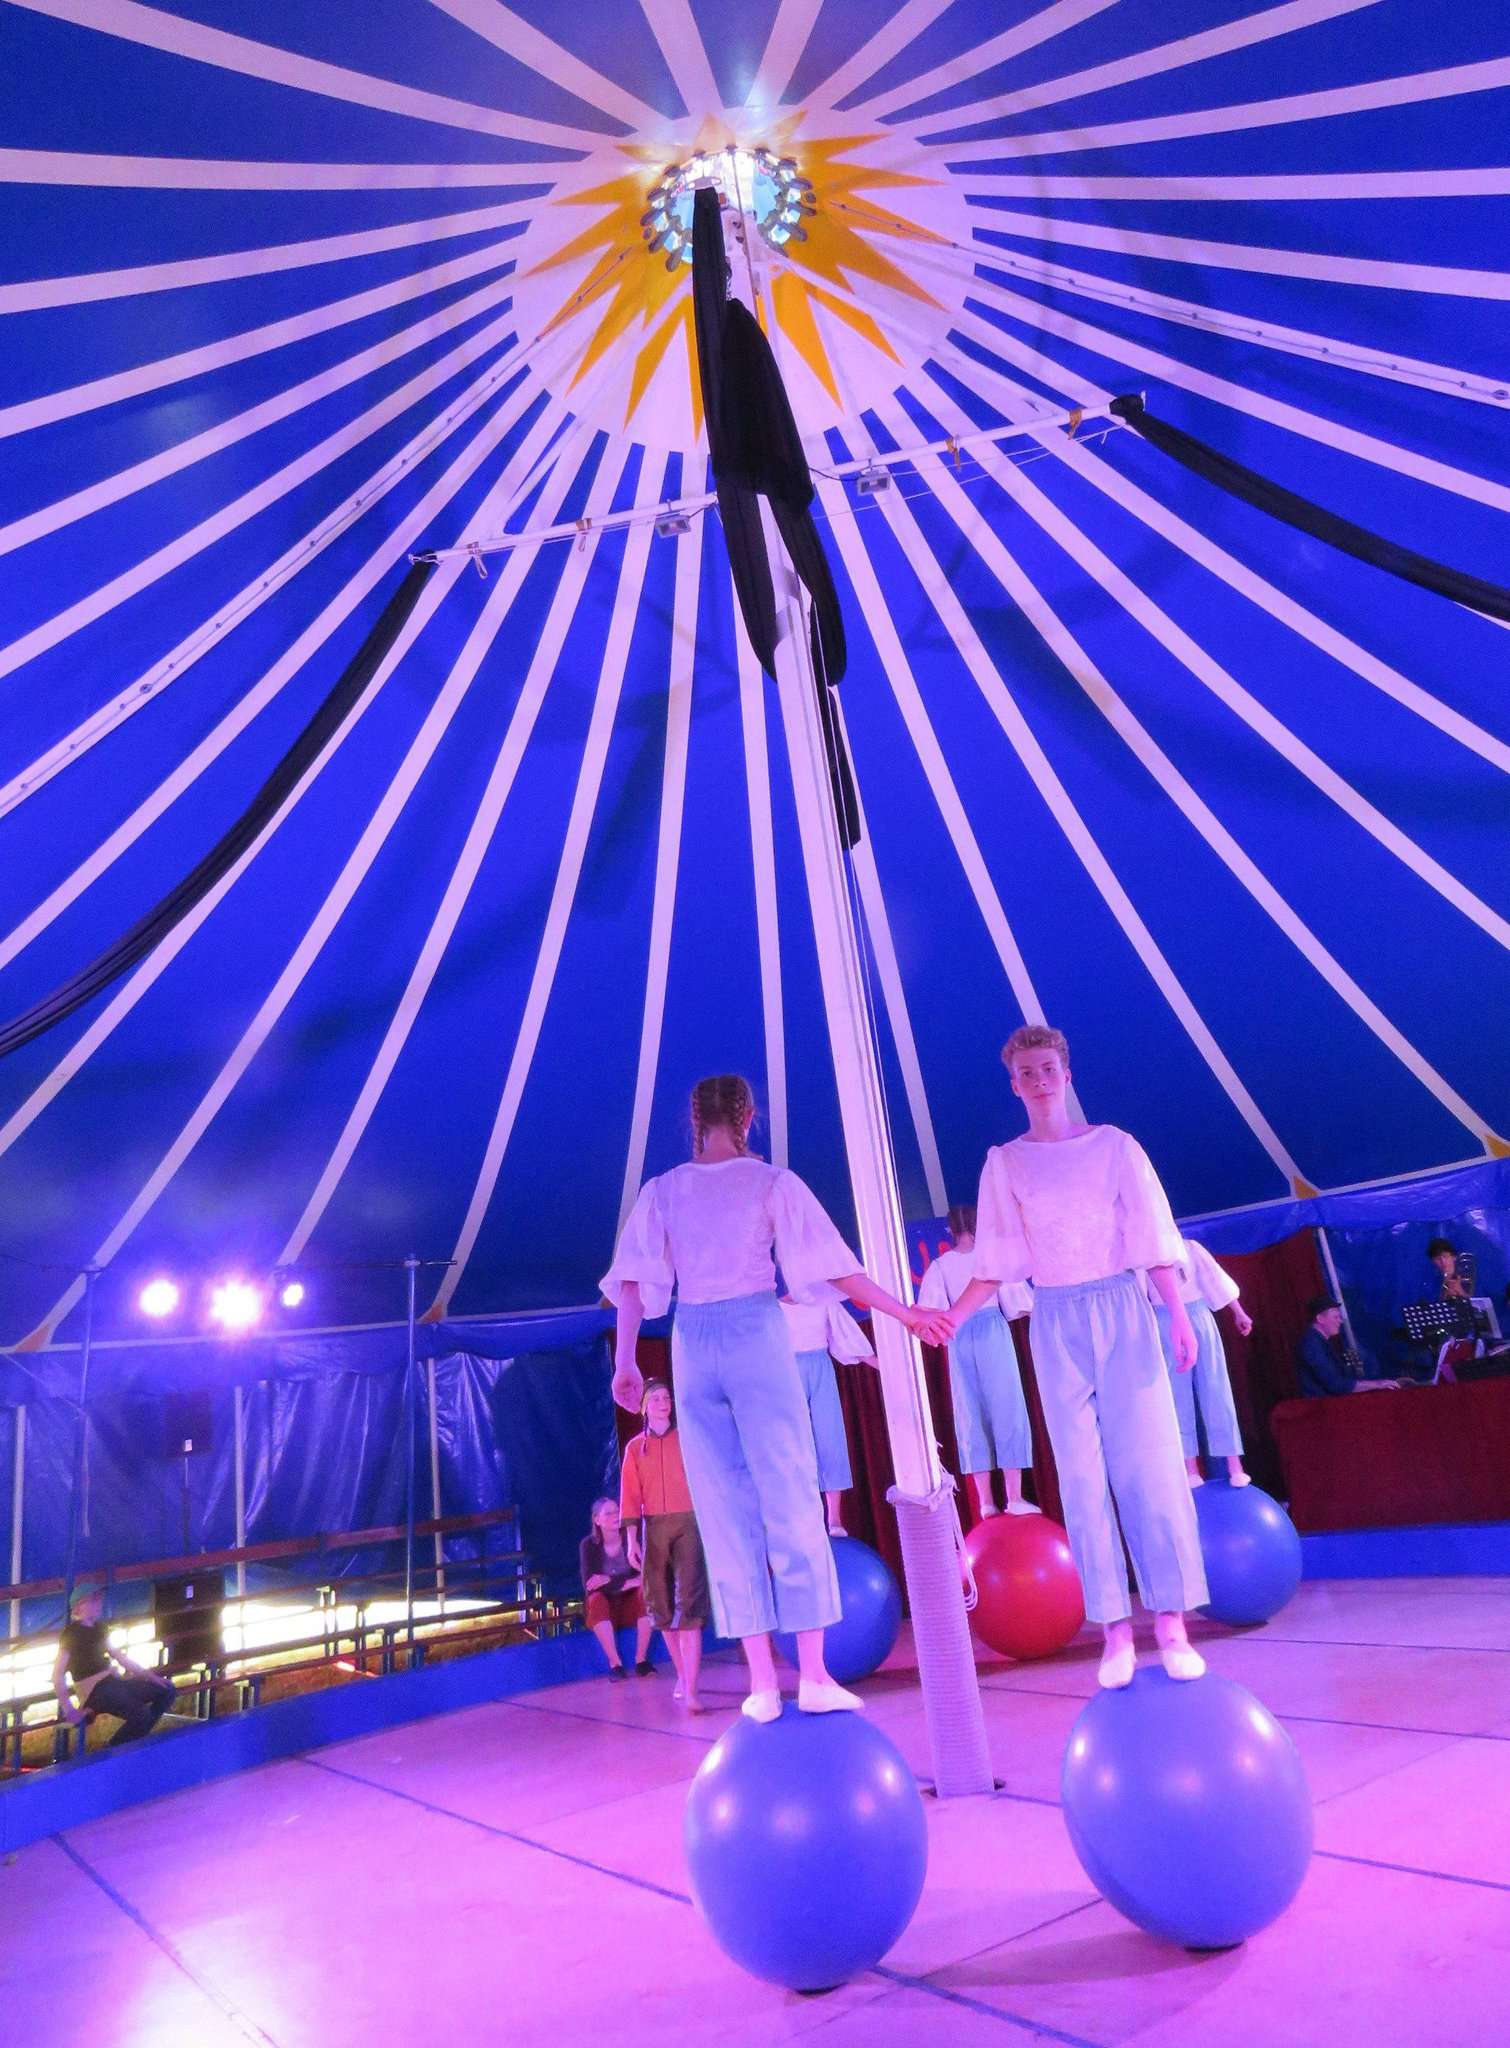 Zirkusbesucher tauchten ein in die fantastische Welt von Khanysa, das geheimnisvolle Land der Erkenntnis.
Foto: Elke Keppler-Rosenau